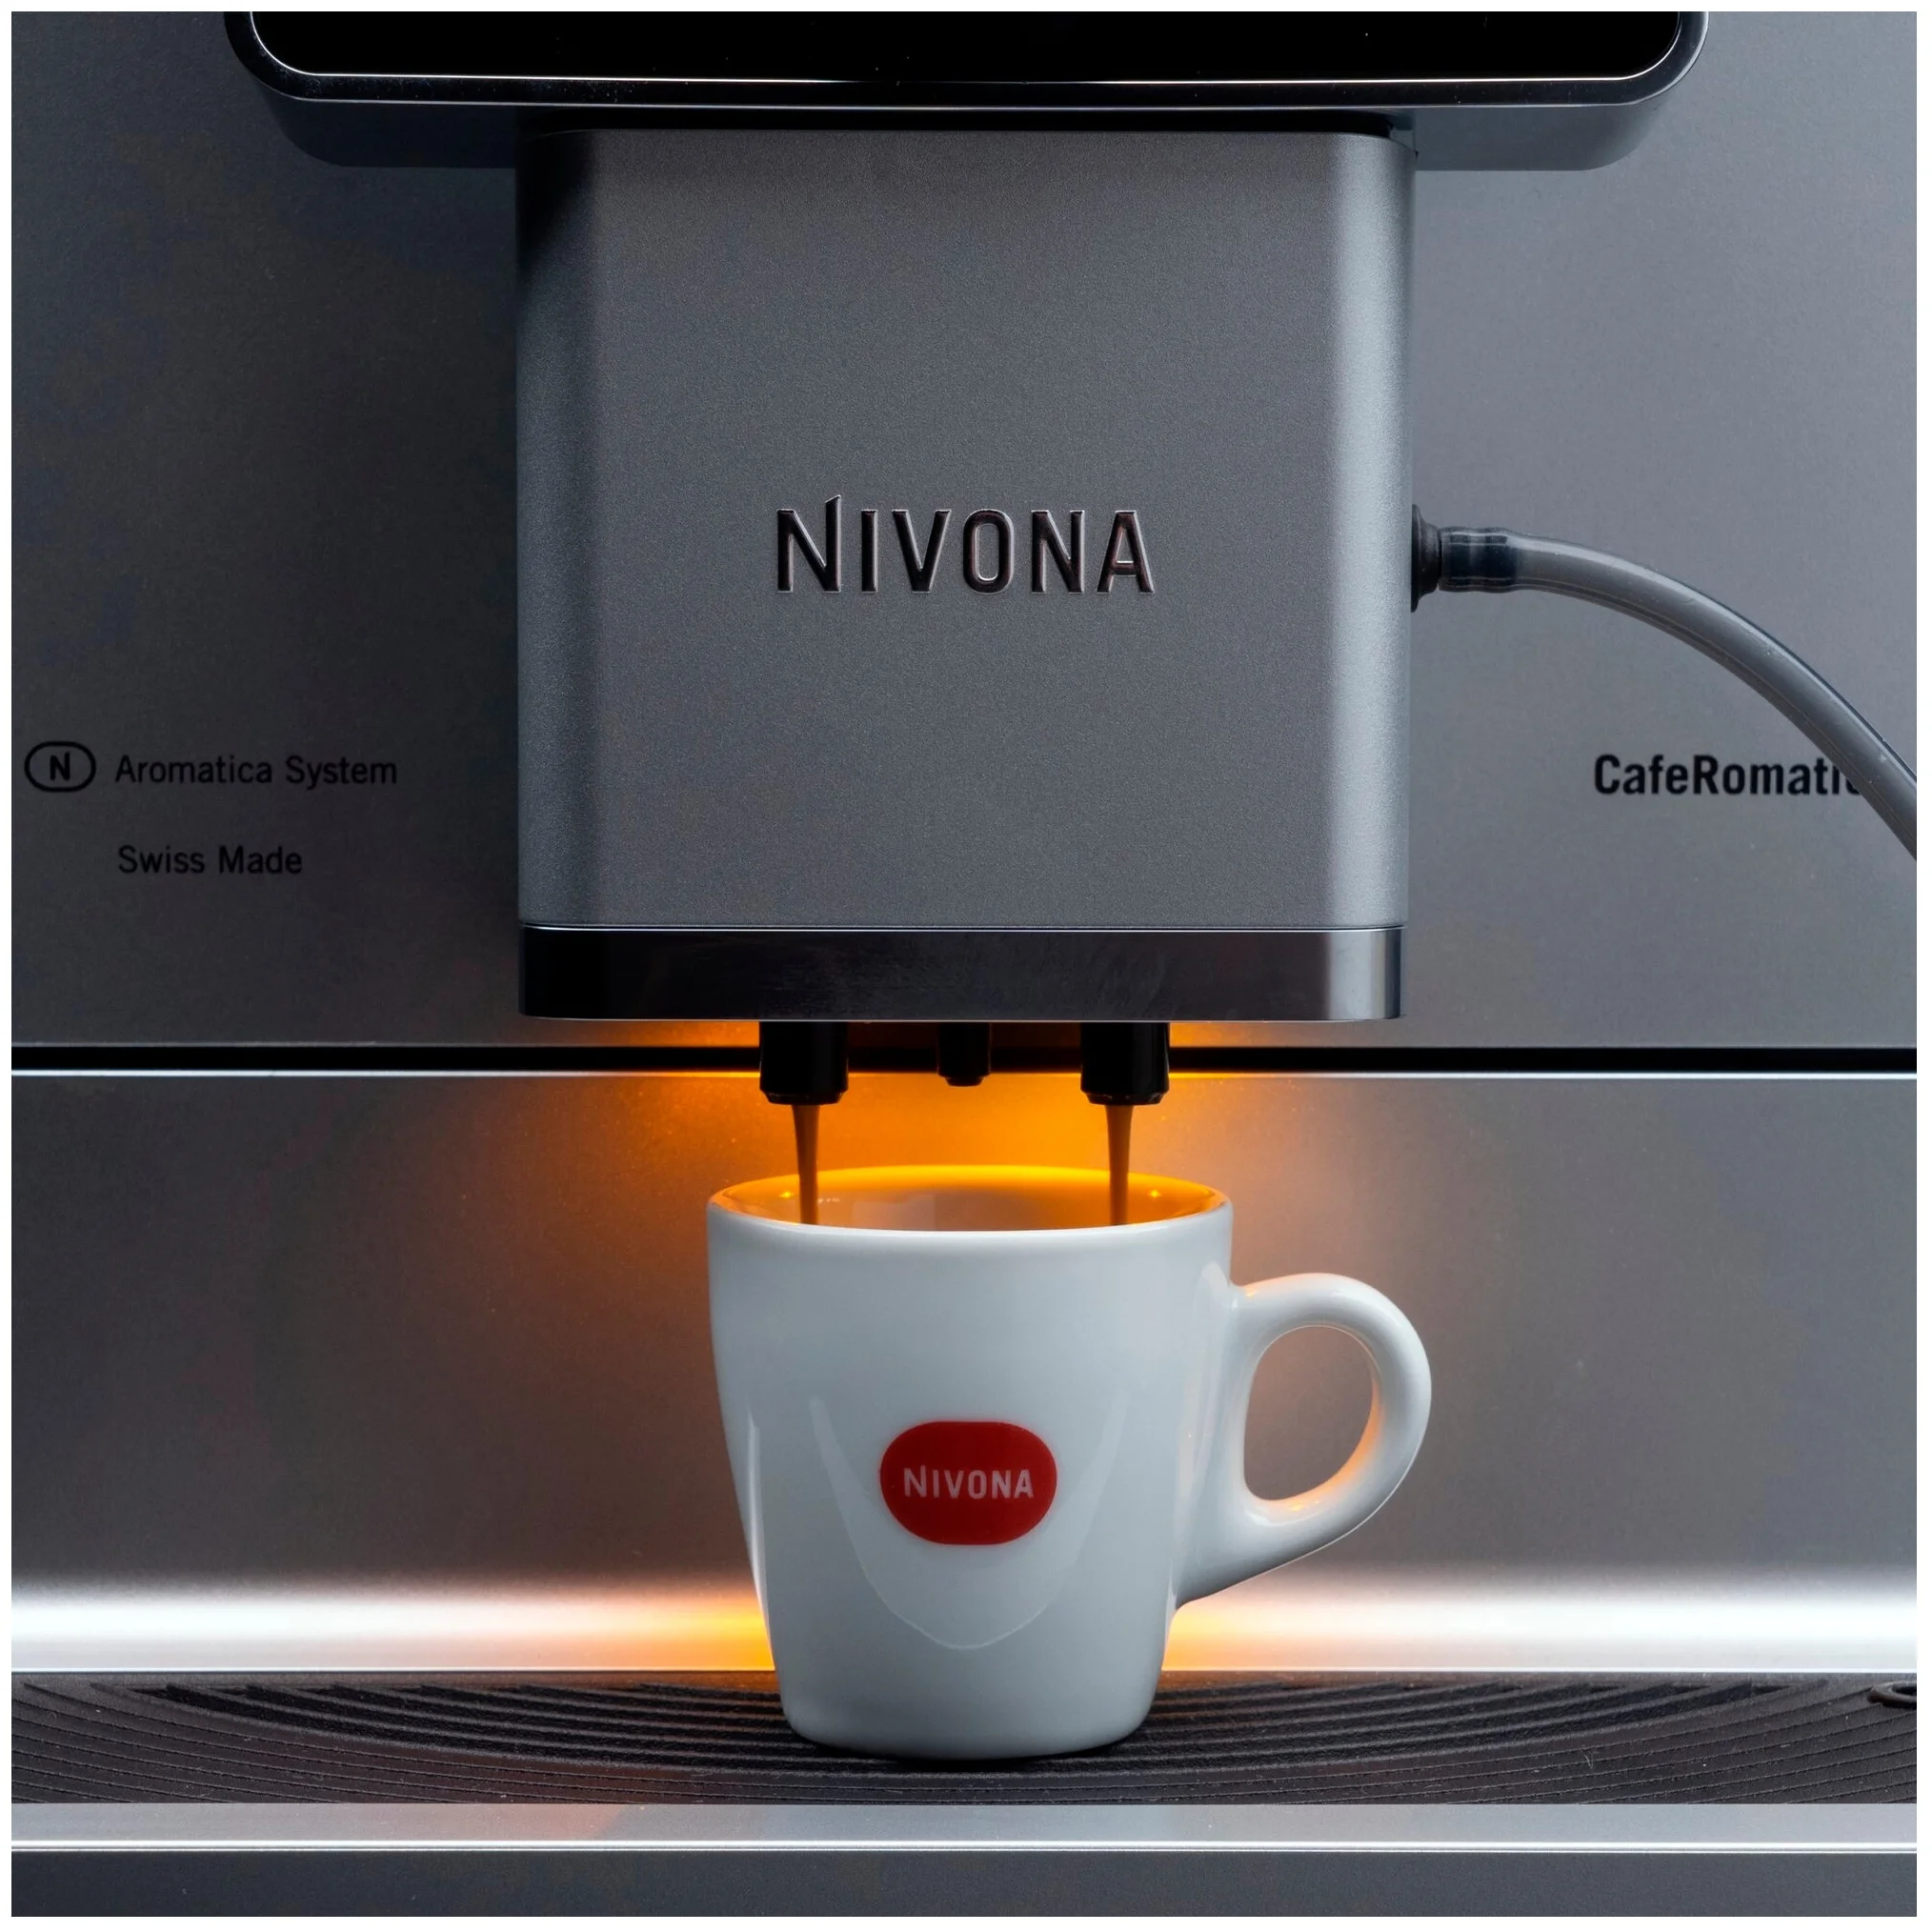 Nivona CafeRomatica 970 - доп. функции: автоматическая декальцинация, подача горячей воды